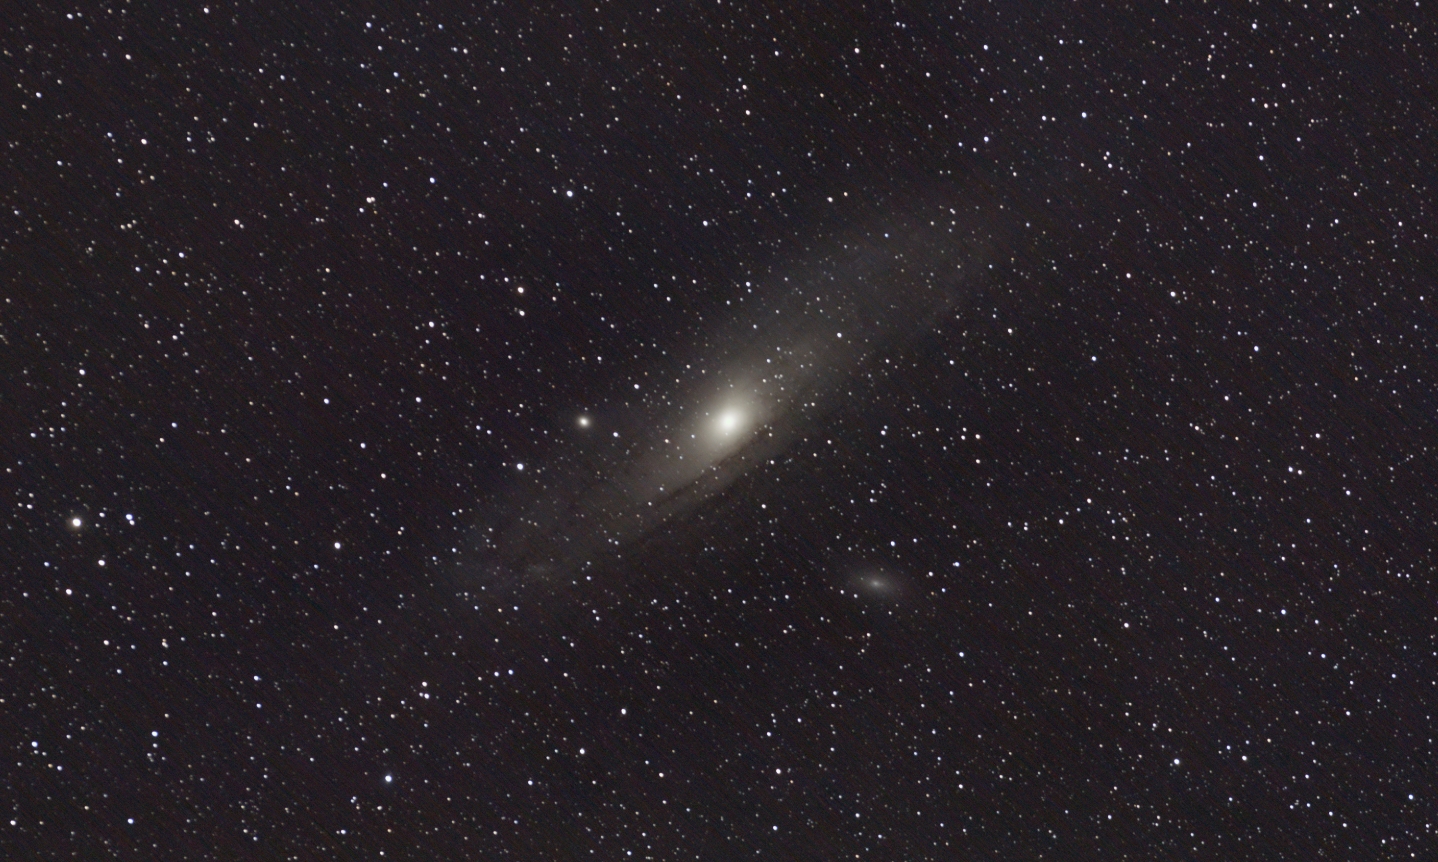 M31lipiec05average11;6jpgAP17proc.jpg